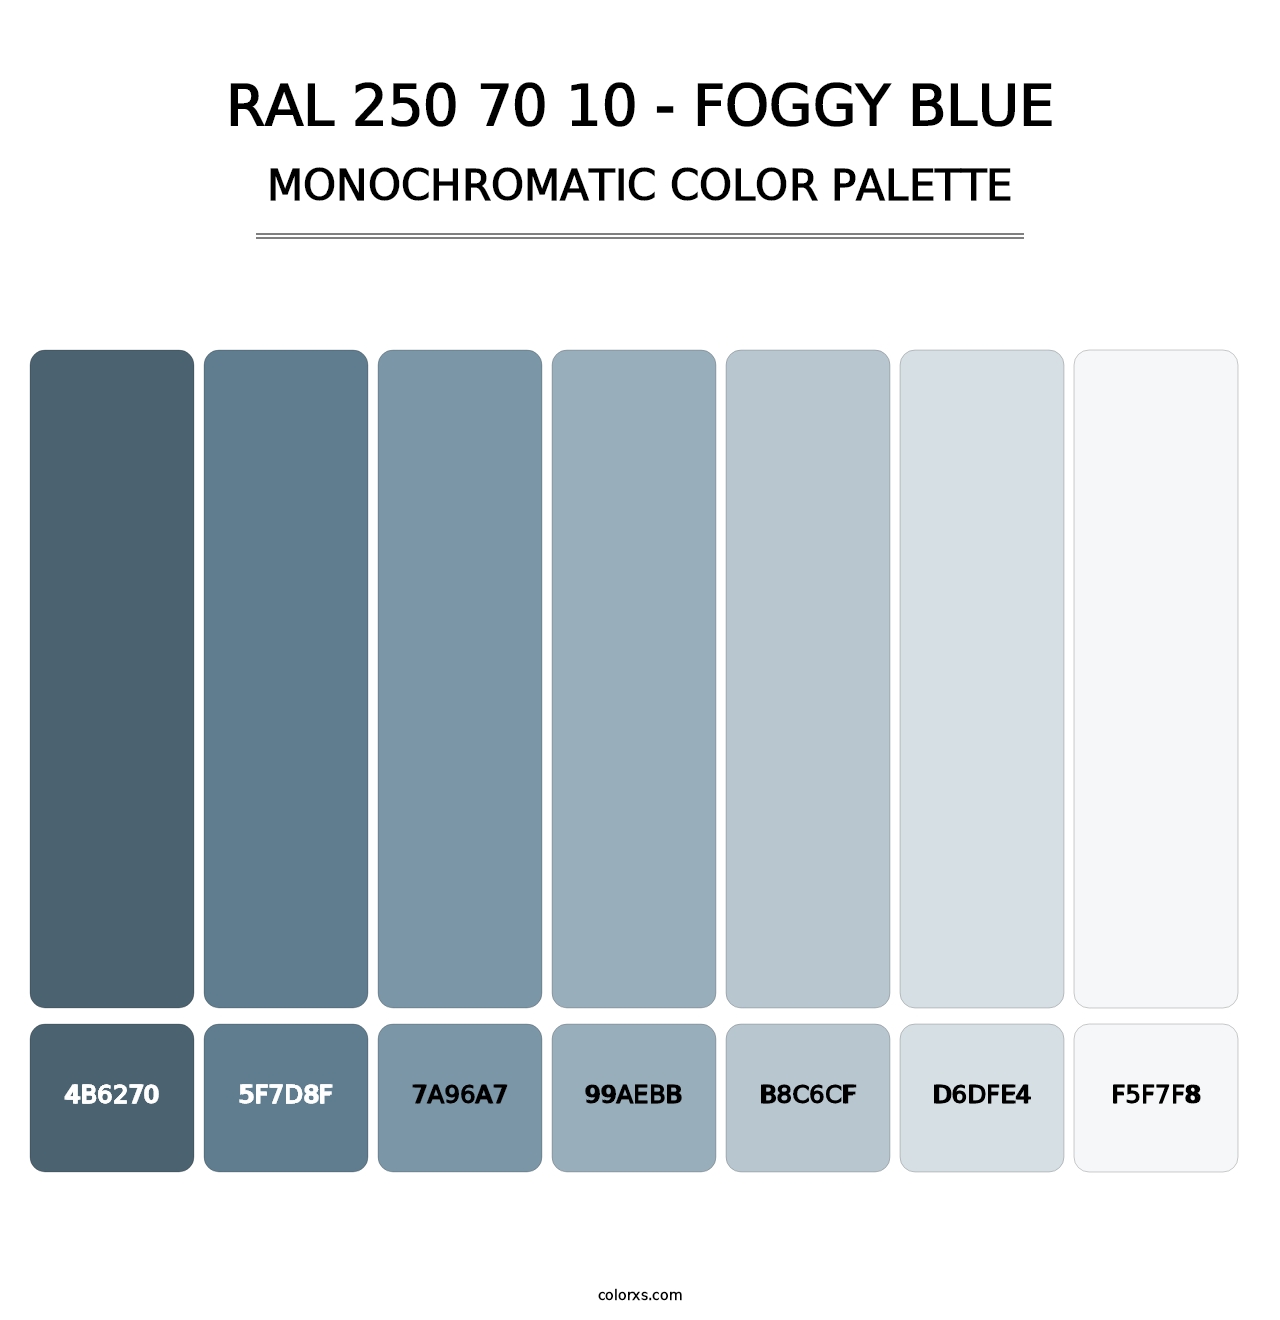 RAL 250 70 10 - Foggy Blue - Monochromatic Color Palette